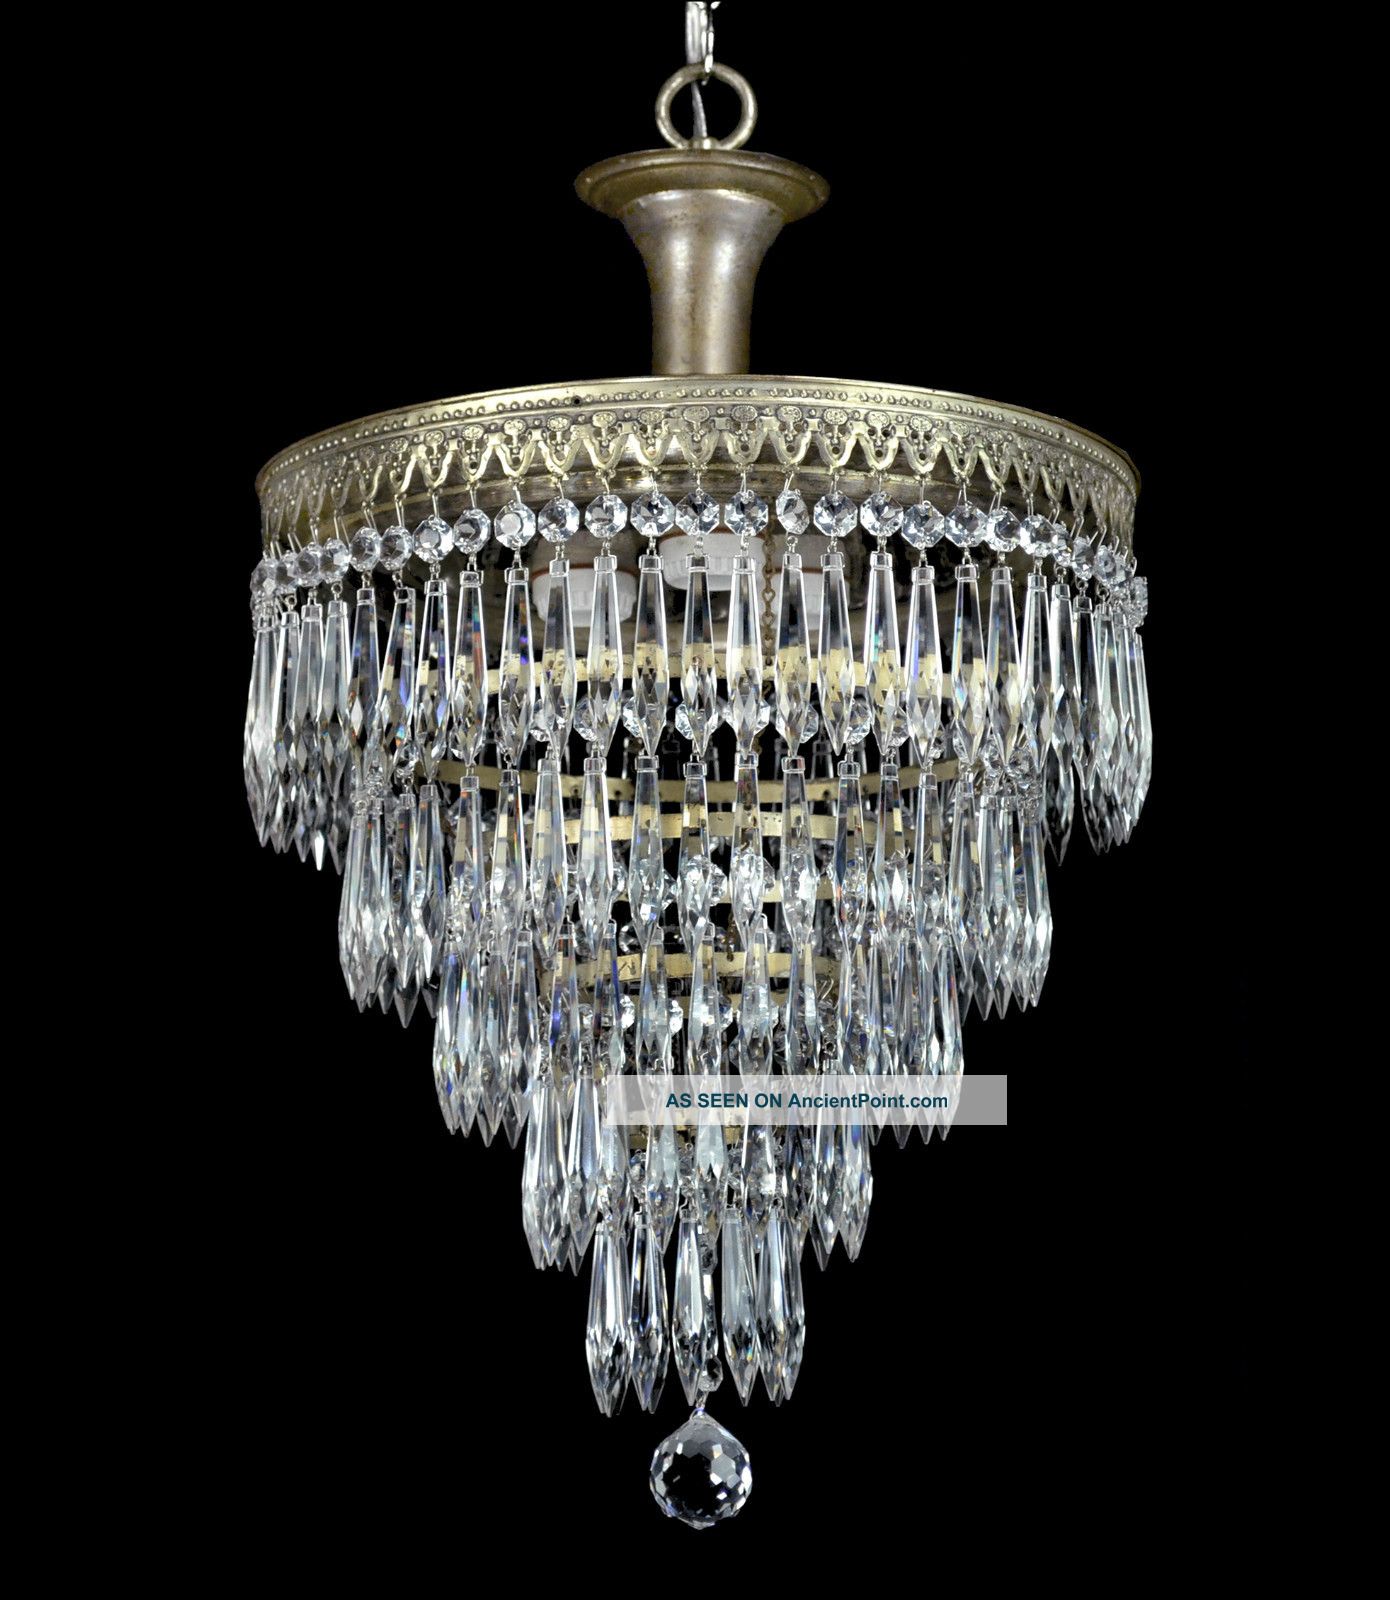 Pendant vintage  Wedding Vintage  Cake Empire Chandelier Art chandelier Antique Crystal  lighting crystal